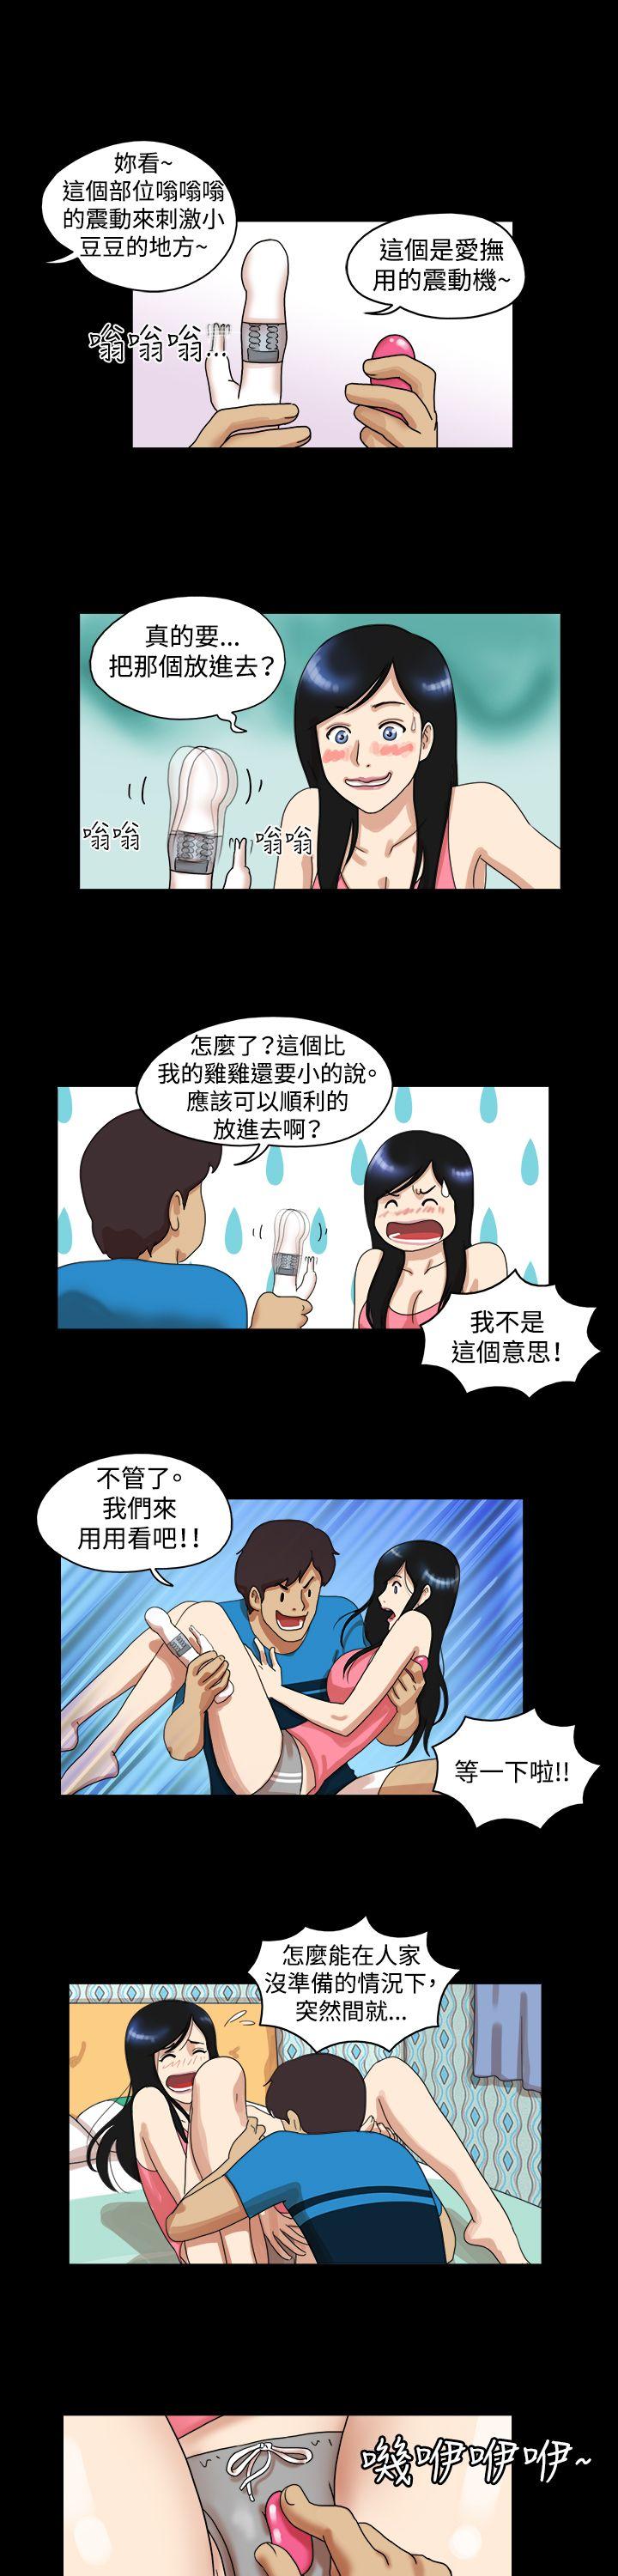 韩国污漫画 17種性幻想第一季 第30话 7